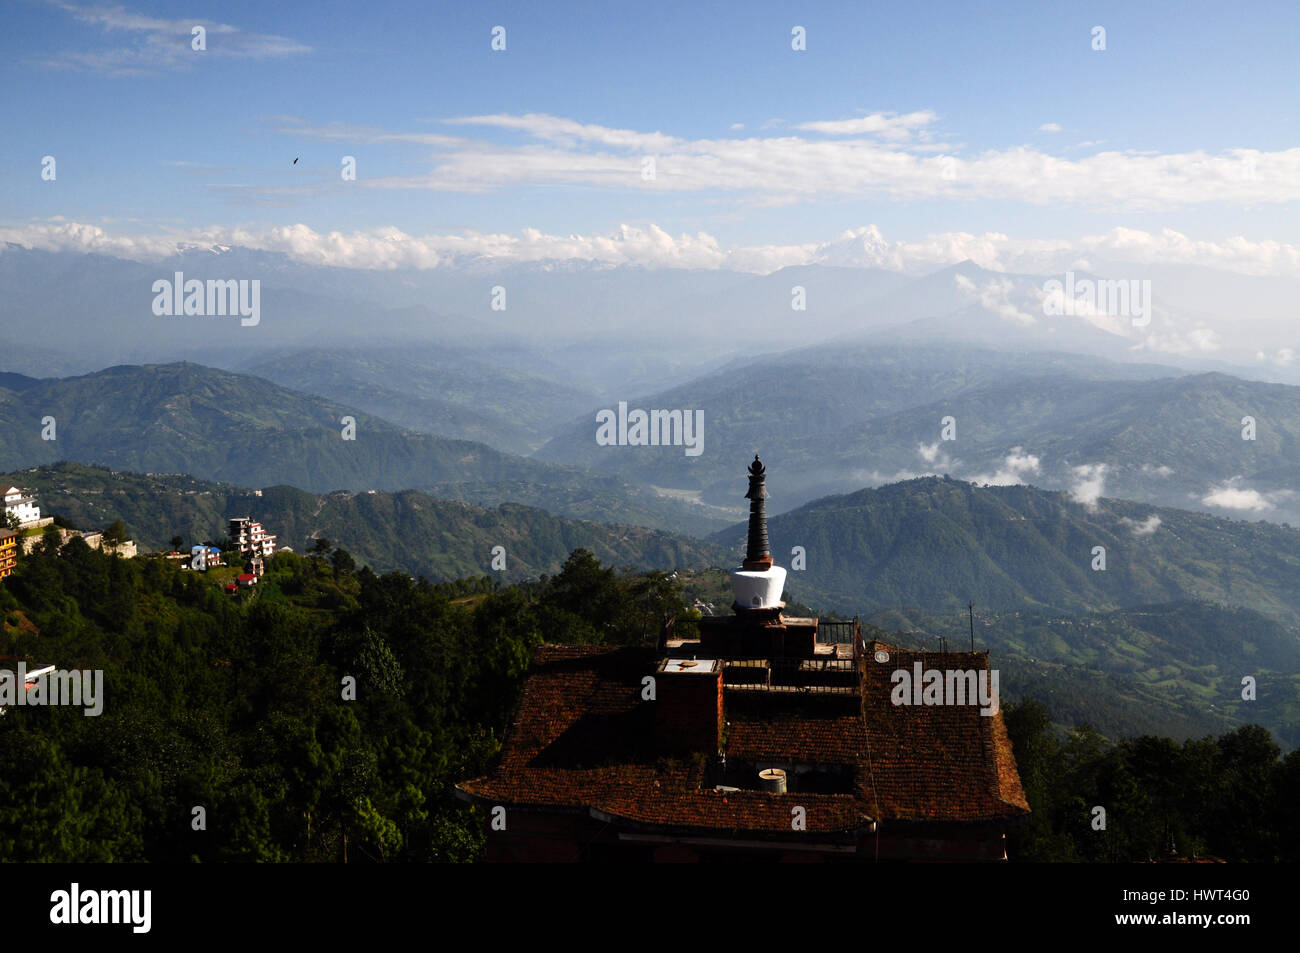 Vue sur le toit de l'Himalaya népalais et hôtel avec stupa (mortier) - matin à Nagarkot Banque D'Images